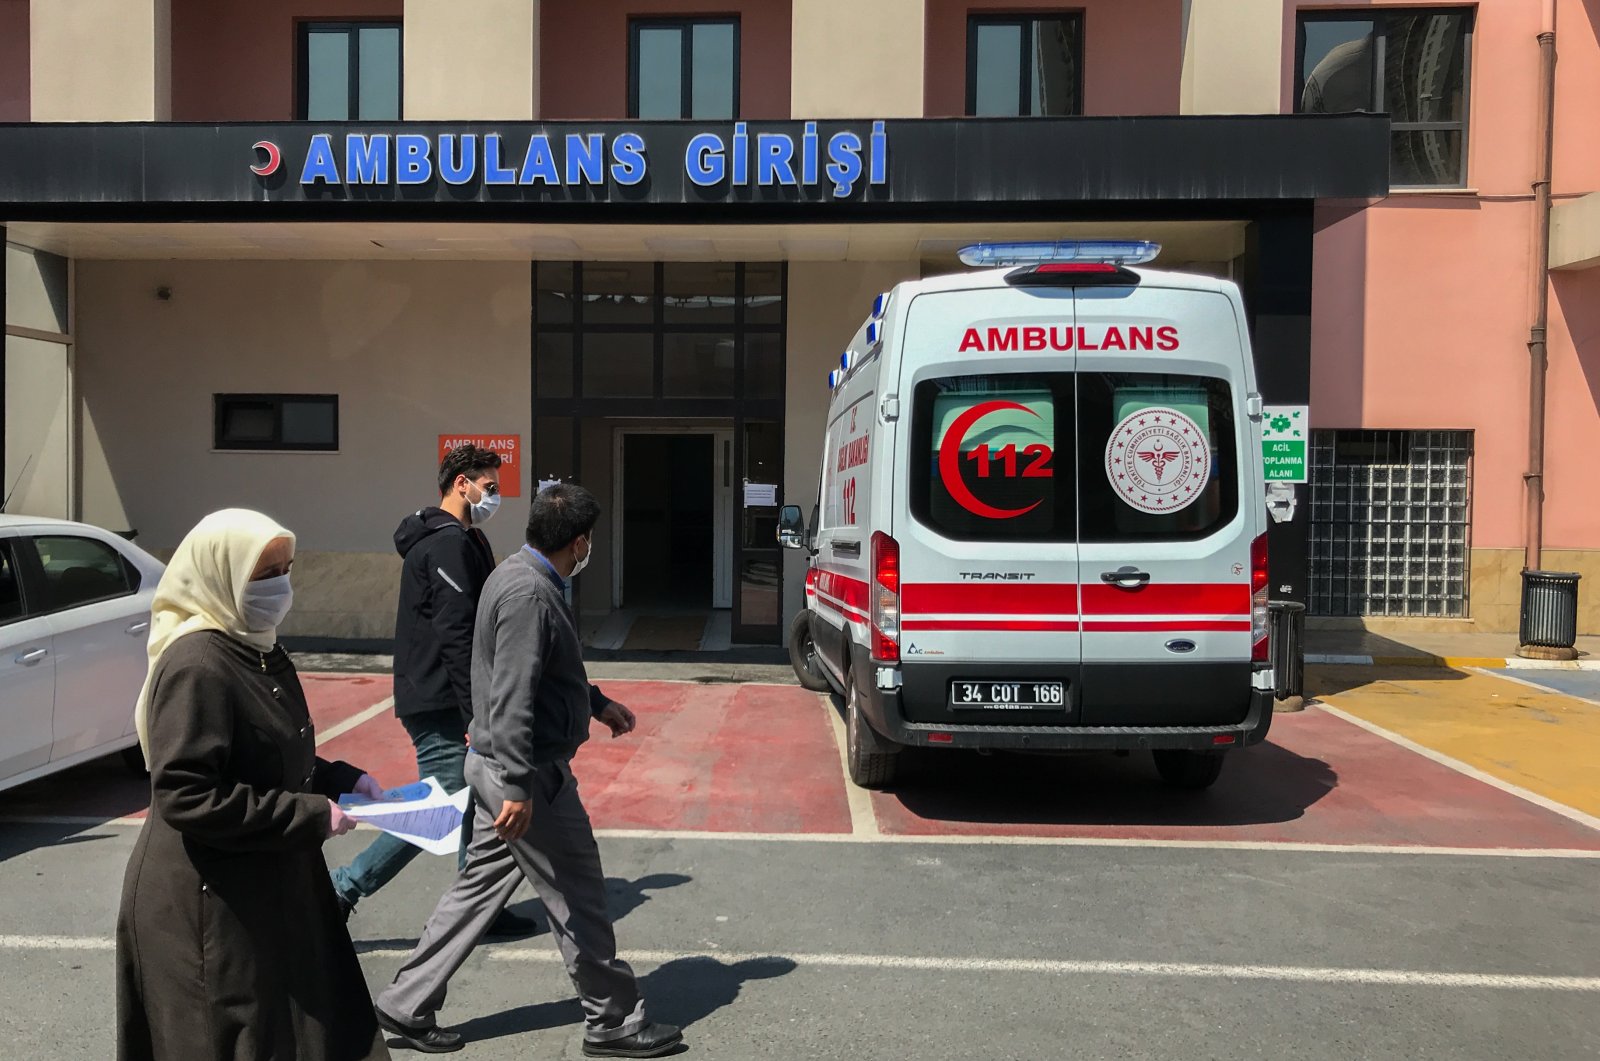 Kementerian Kesehatan Turki memperluas cakupan layanan perawatan di rumah untuk lansia